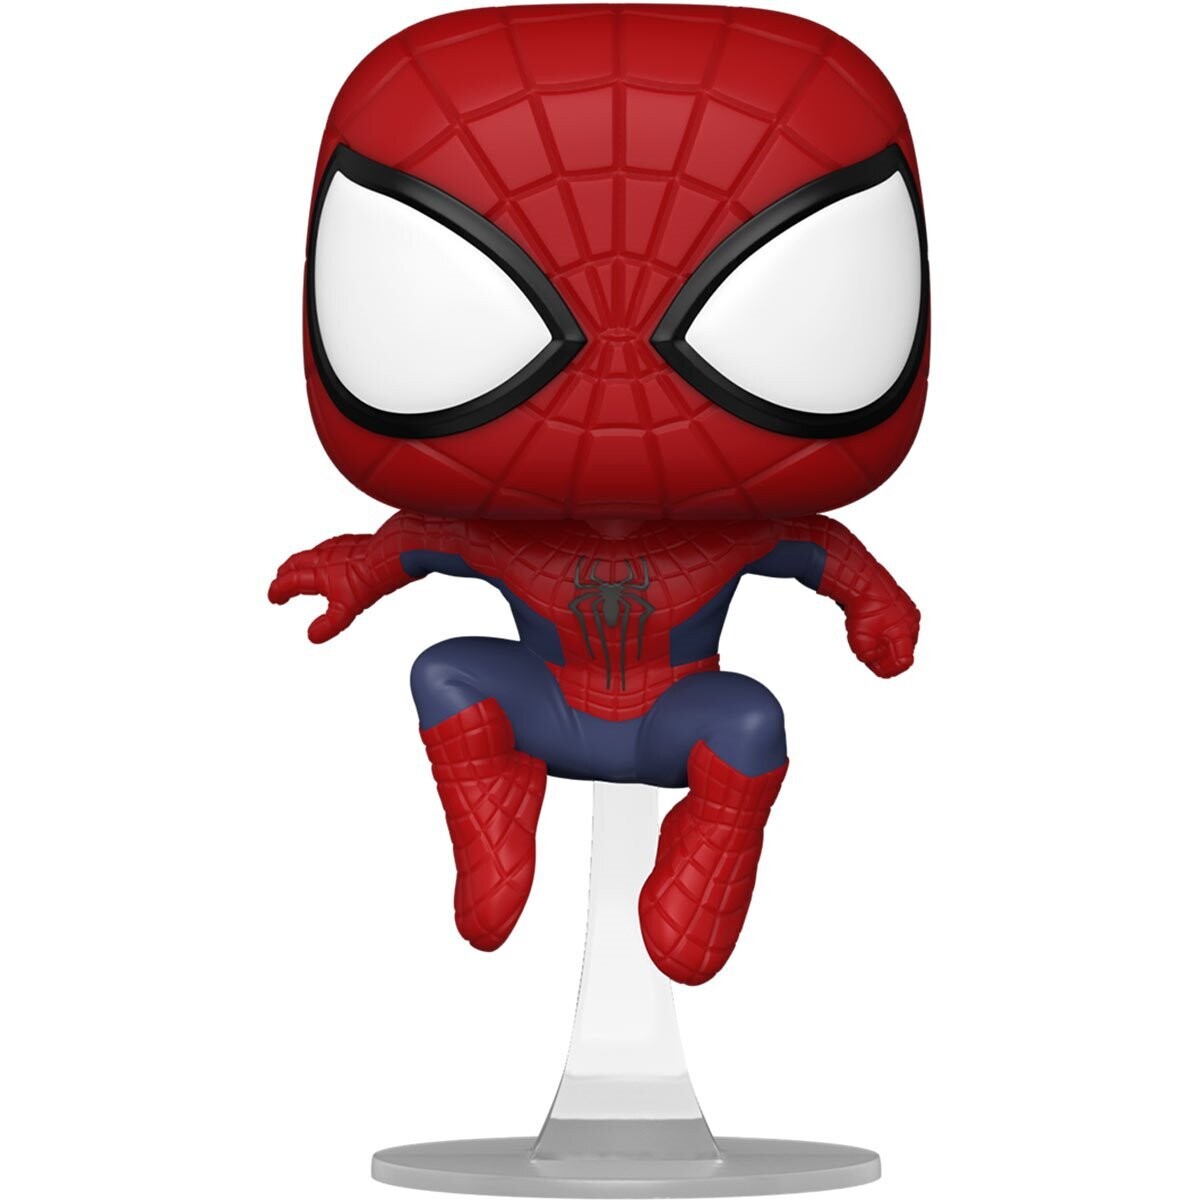 PRE-ORDER Funko Spider-Man: No Way Home The Amazing Spider-Man Pop! Vinyl Figure